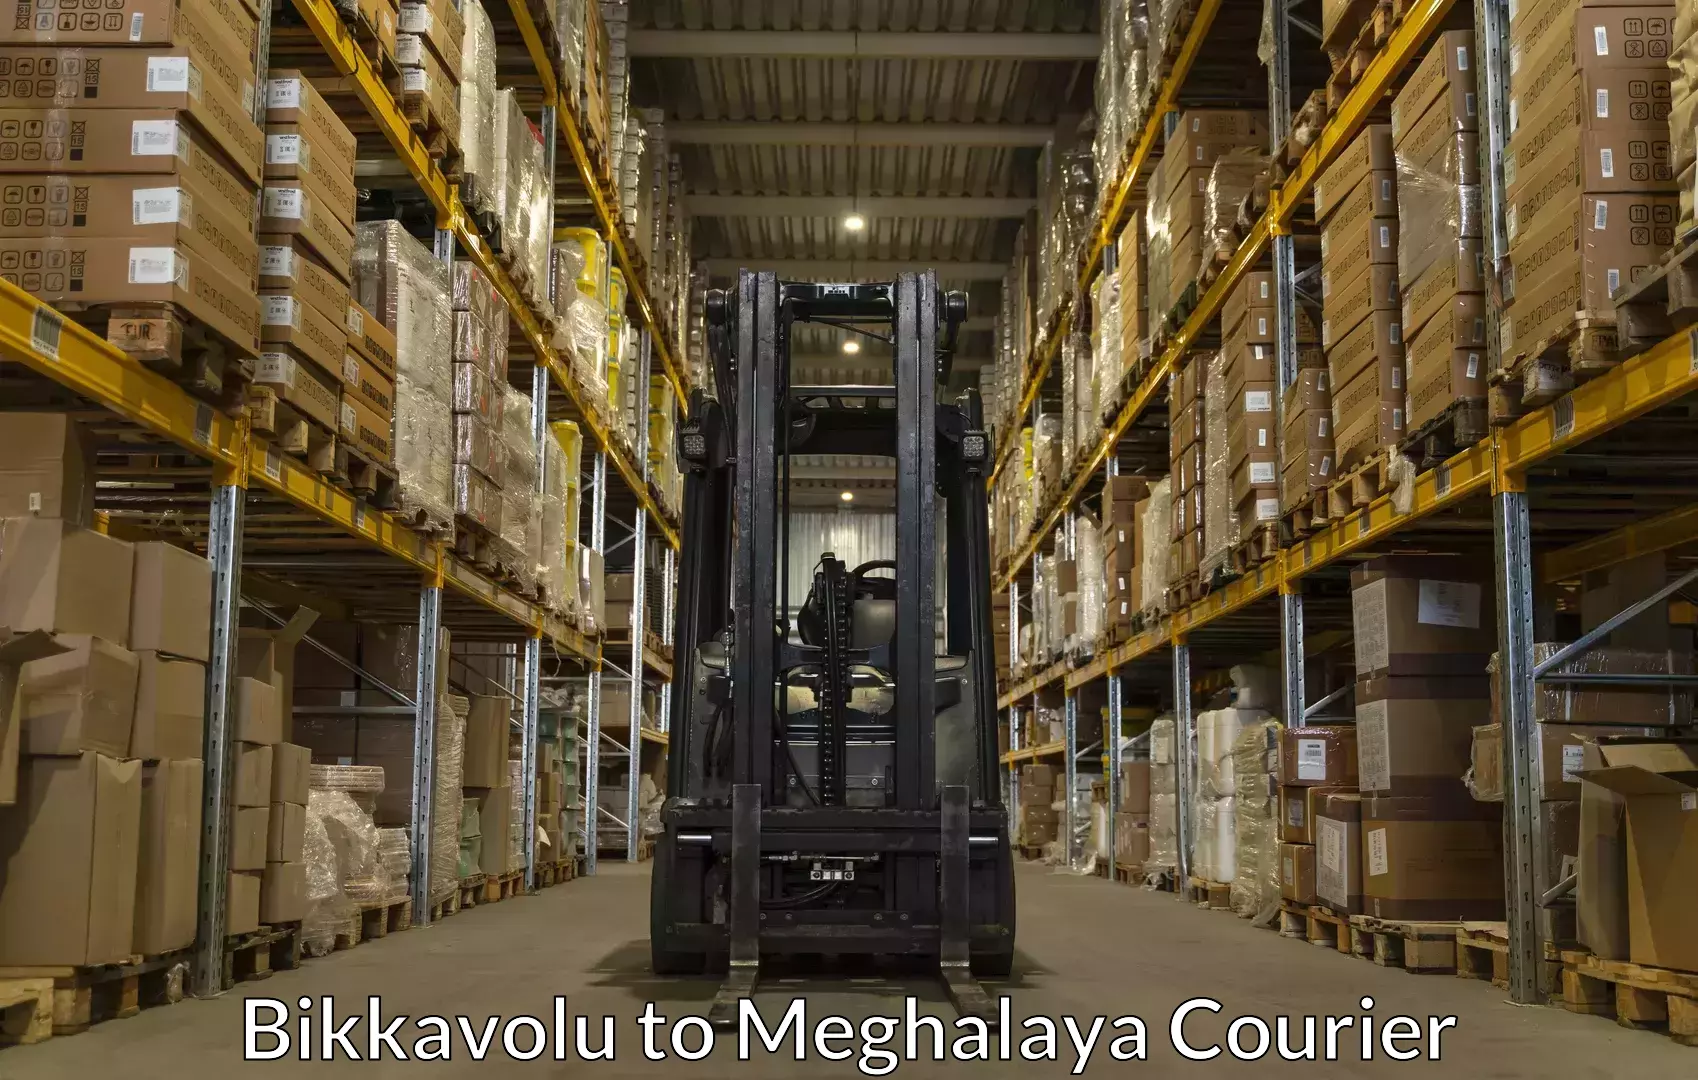 Furniture transport services Bikkavolu to Meghalaya